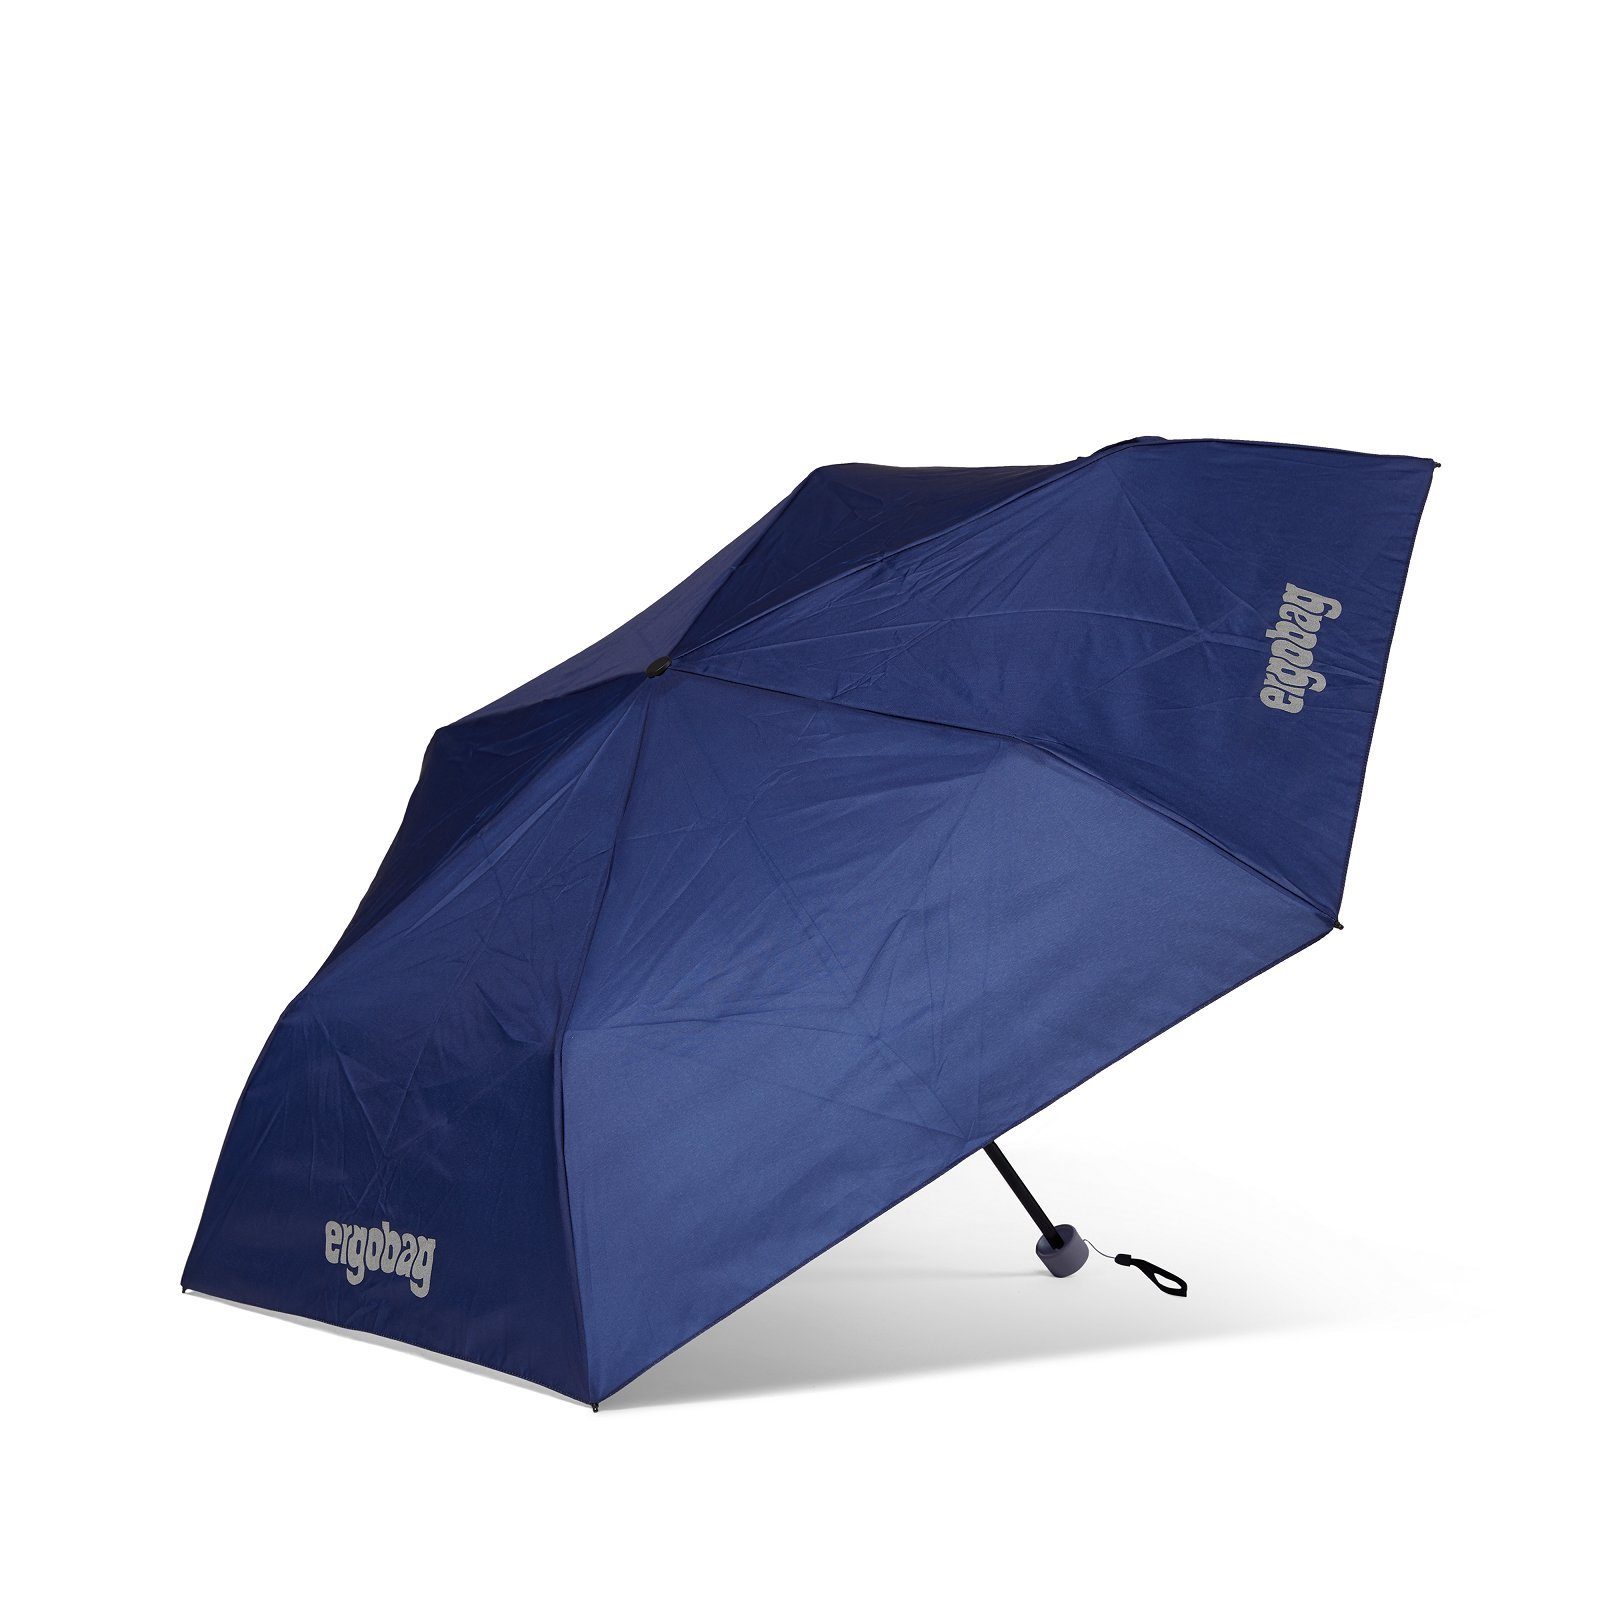 Kinder-Regenschirm, BlaulichtBär Refektierend ergobag Taschenregenschirm